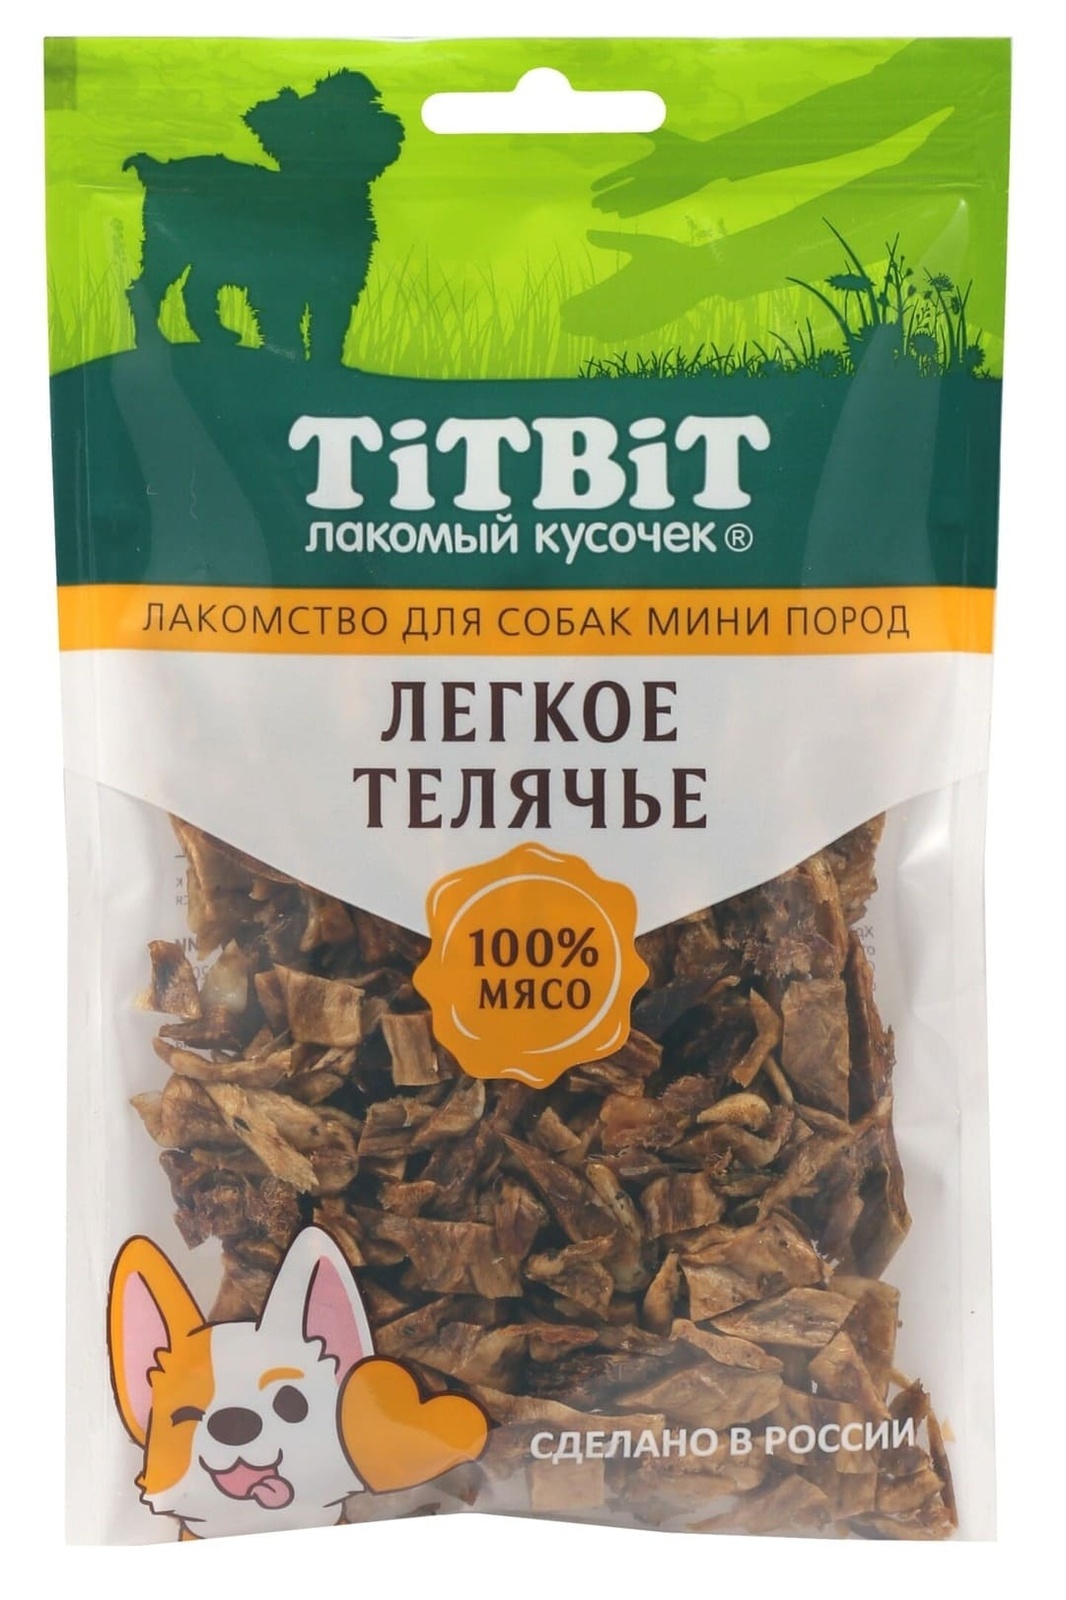 TiTBiT TiTBiT легкое телячье для собак мини пород (50 г) titbit лакомство для собак легкое телячье 50 г 3 шт